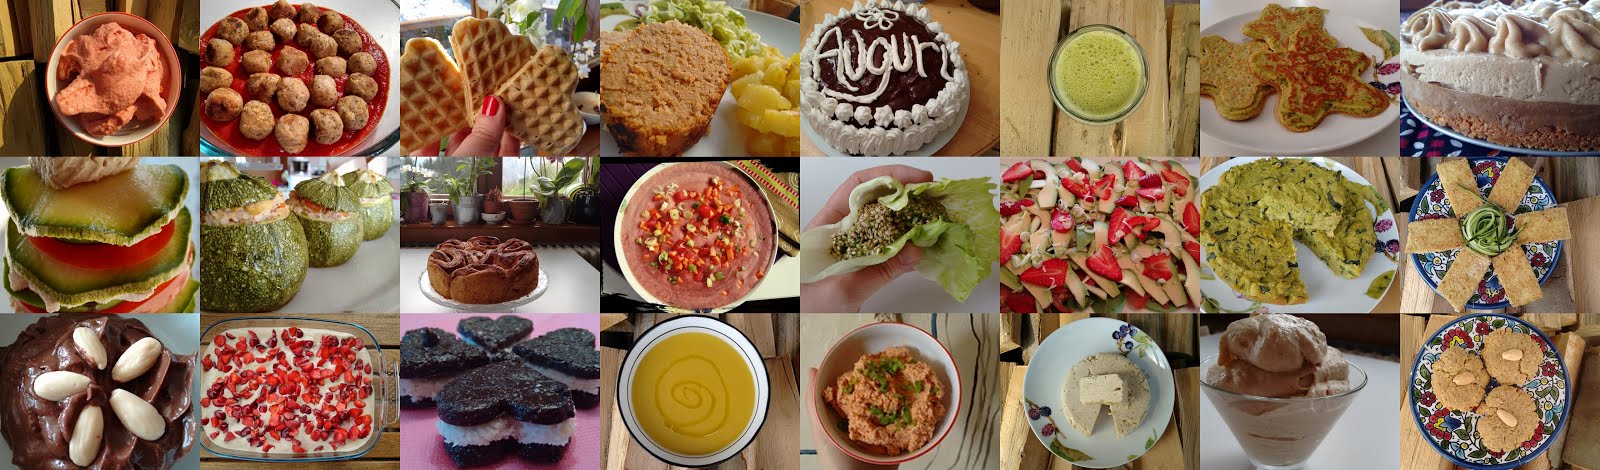 Blog di cucina con ricette colorate, sfiziose e golosamente Vegan, con e senza bimby!